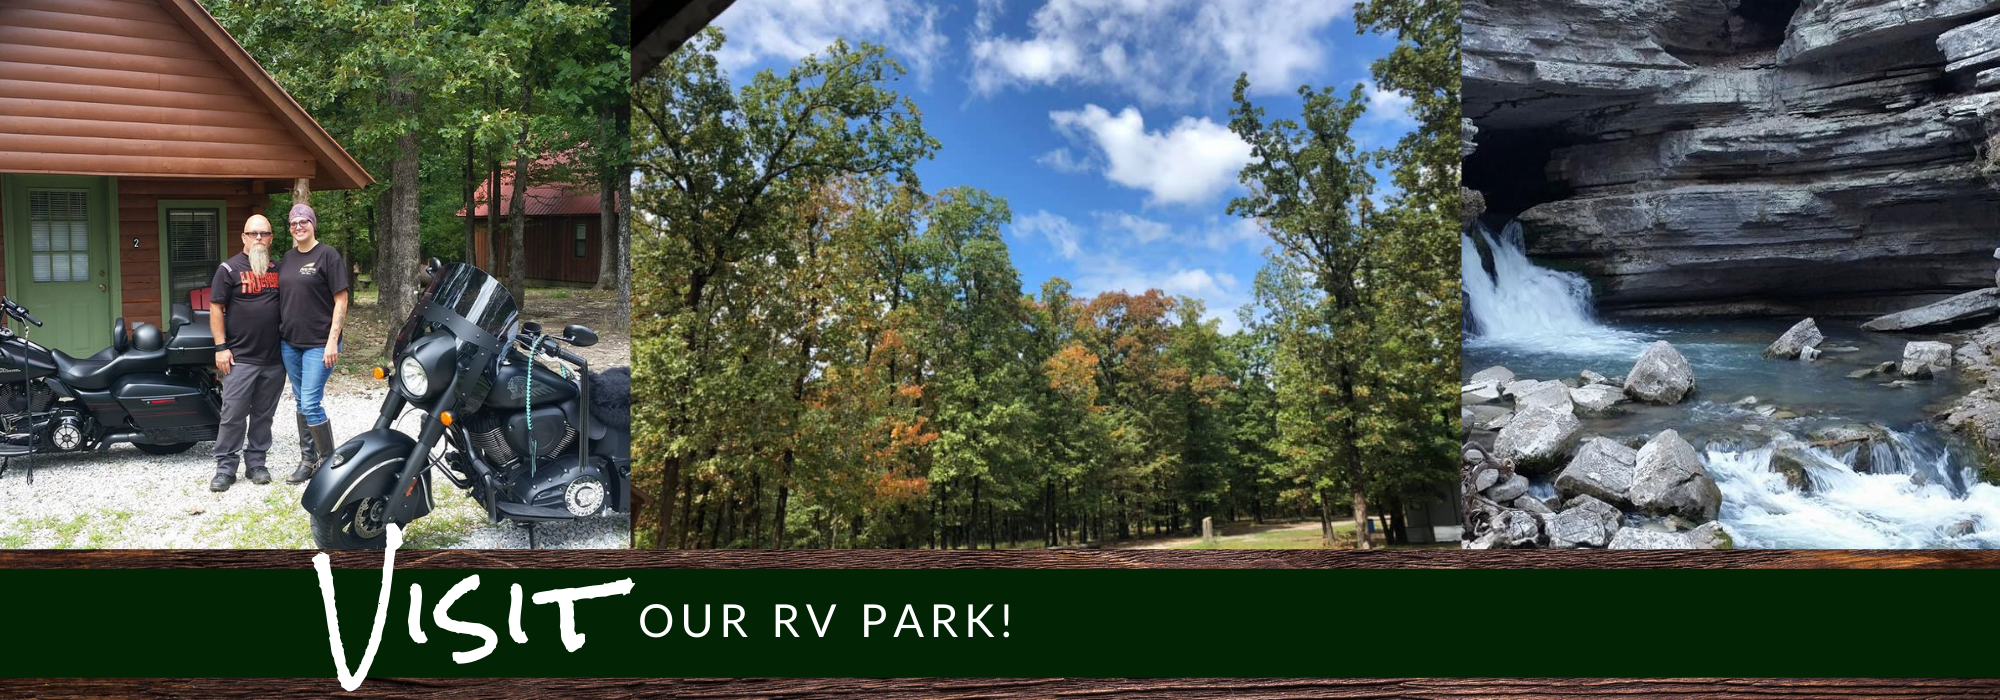 Visit our RV park 